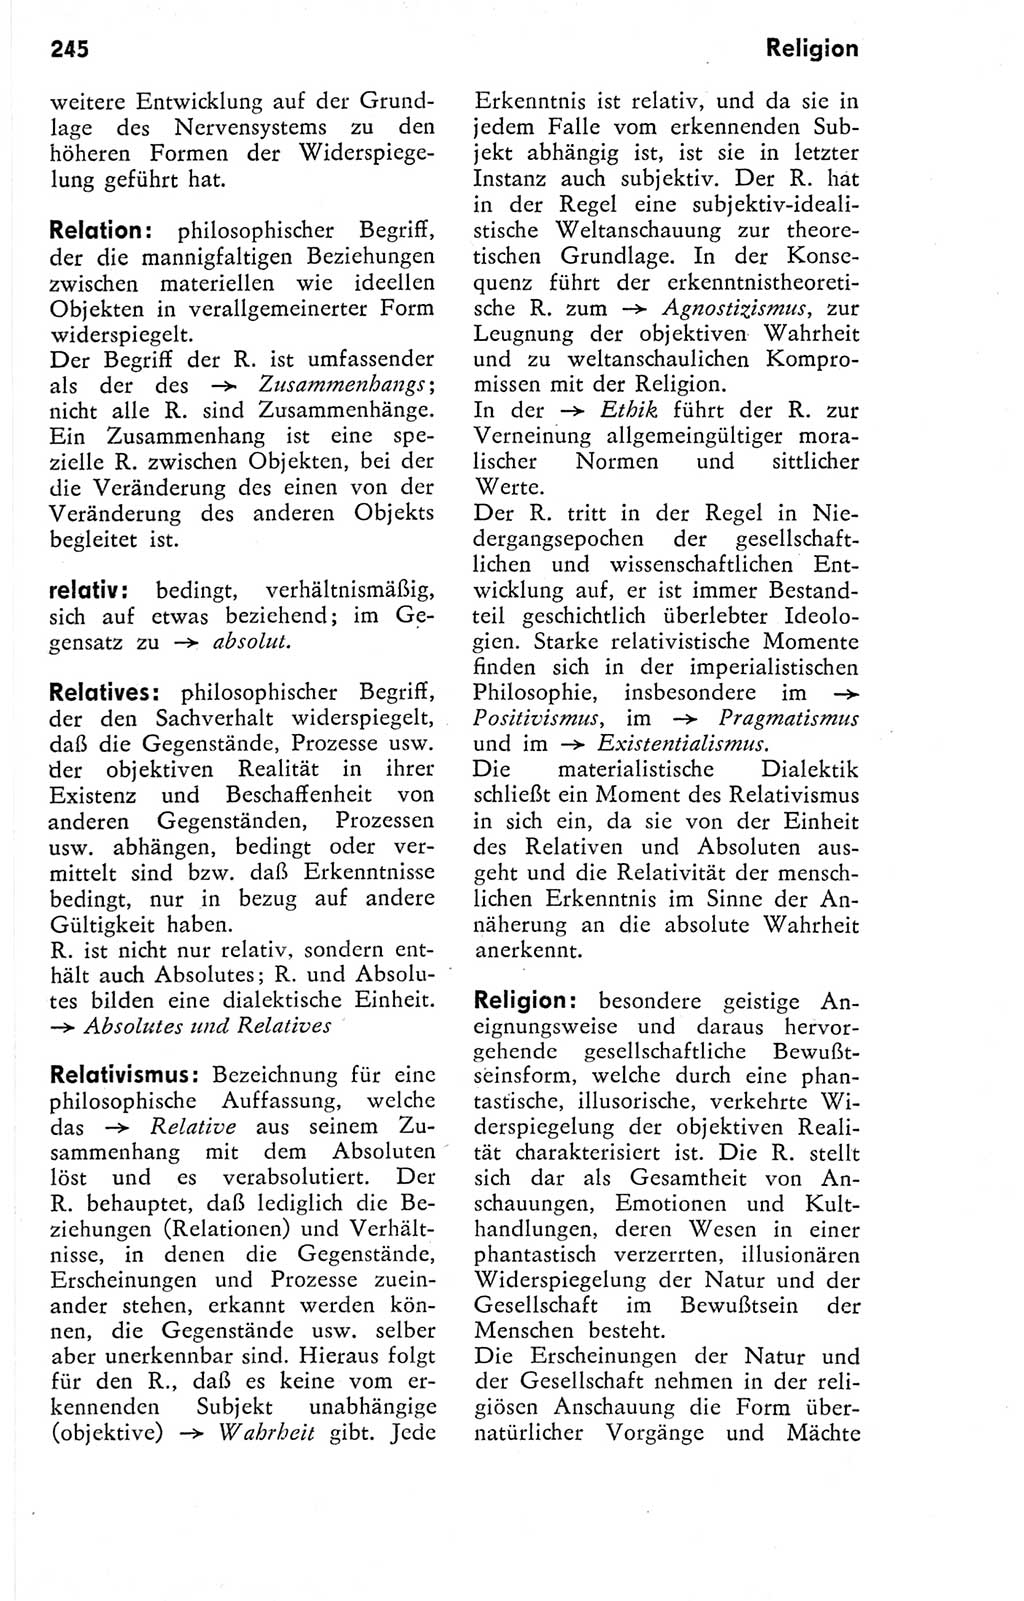 Kleines Wörterbuch der marxistisch-leninistischen Philosophie [Deutsche Demokratische Republik (DDR)] 1974, Seite 245 (Kl. Wb. ML Phil. DDR 1974, S. 245)